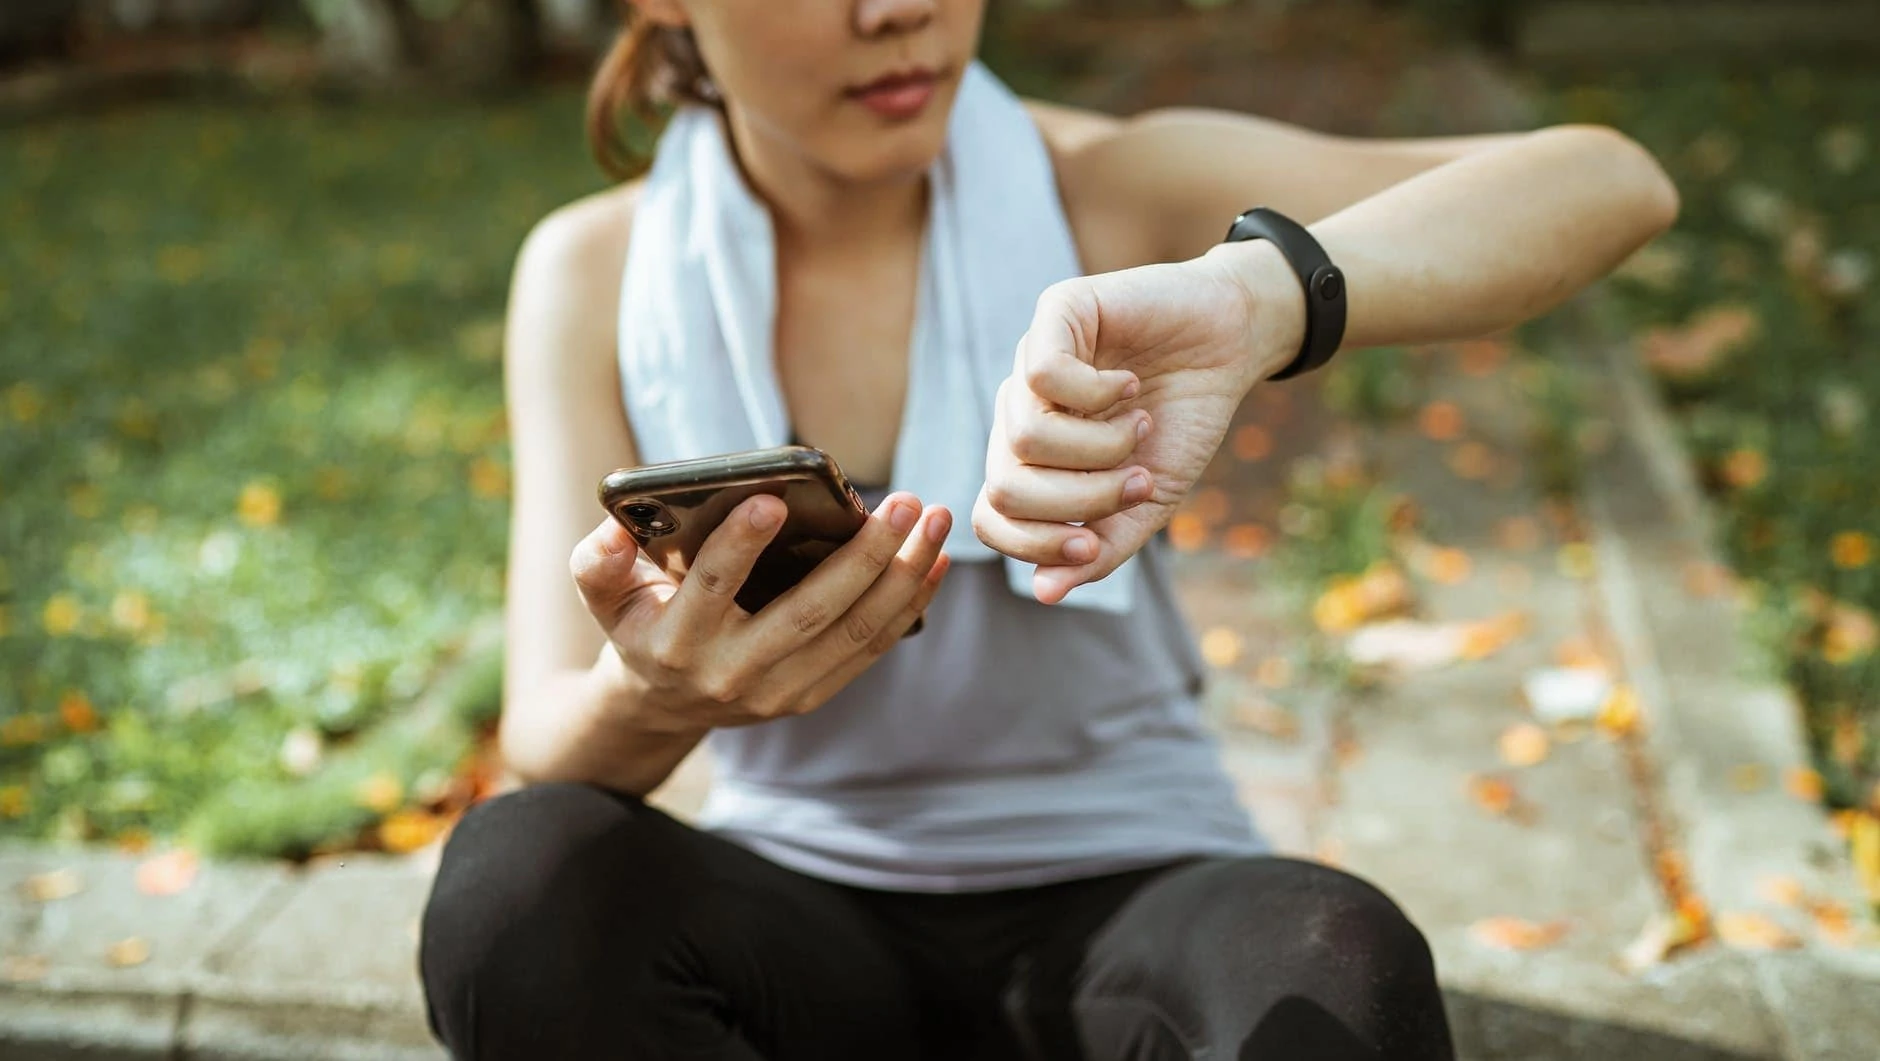 Vrouw bekijkt de resultaten van haar activity tracker op haar smartphone